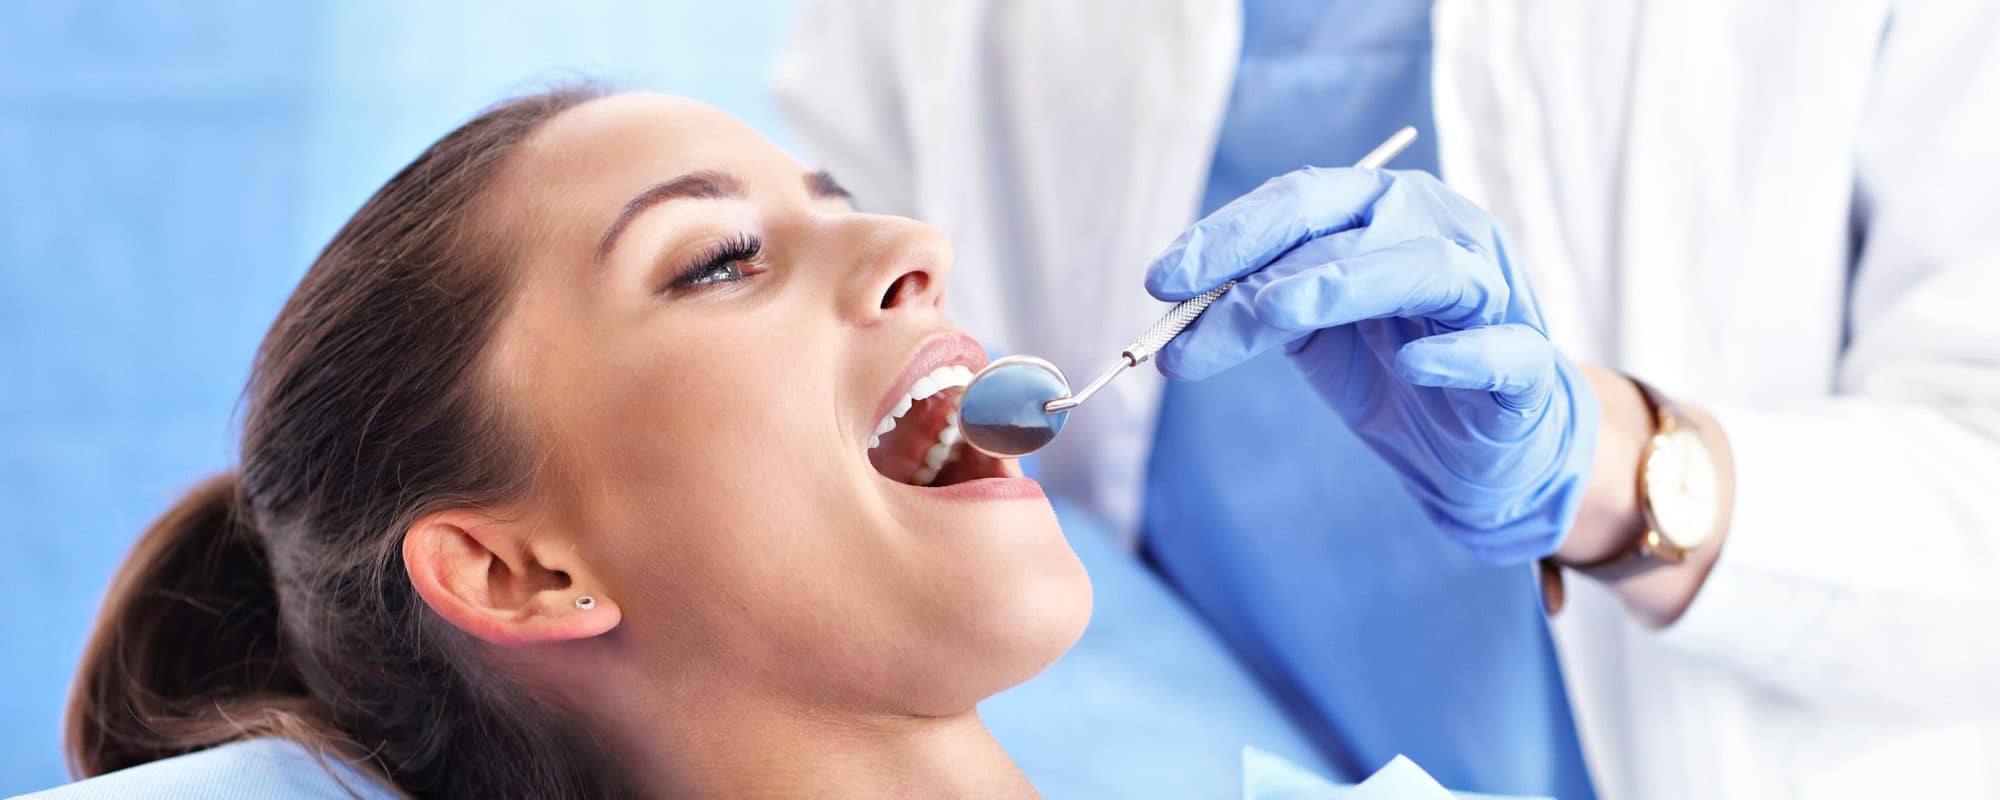 La carie dentale negli adulti: cause, rimedi, trattamenti e fattori di rischio